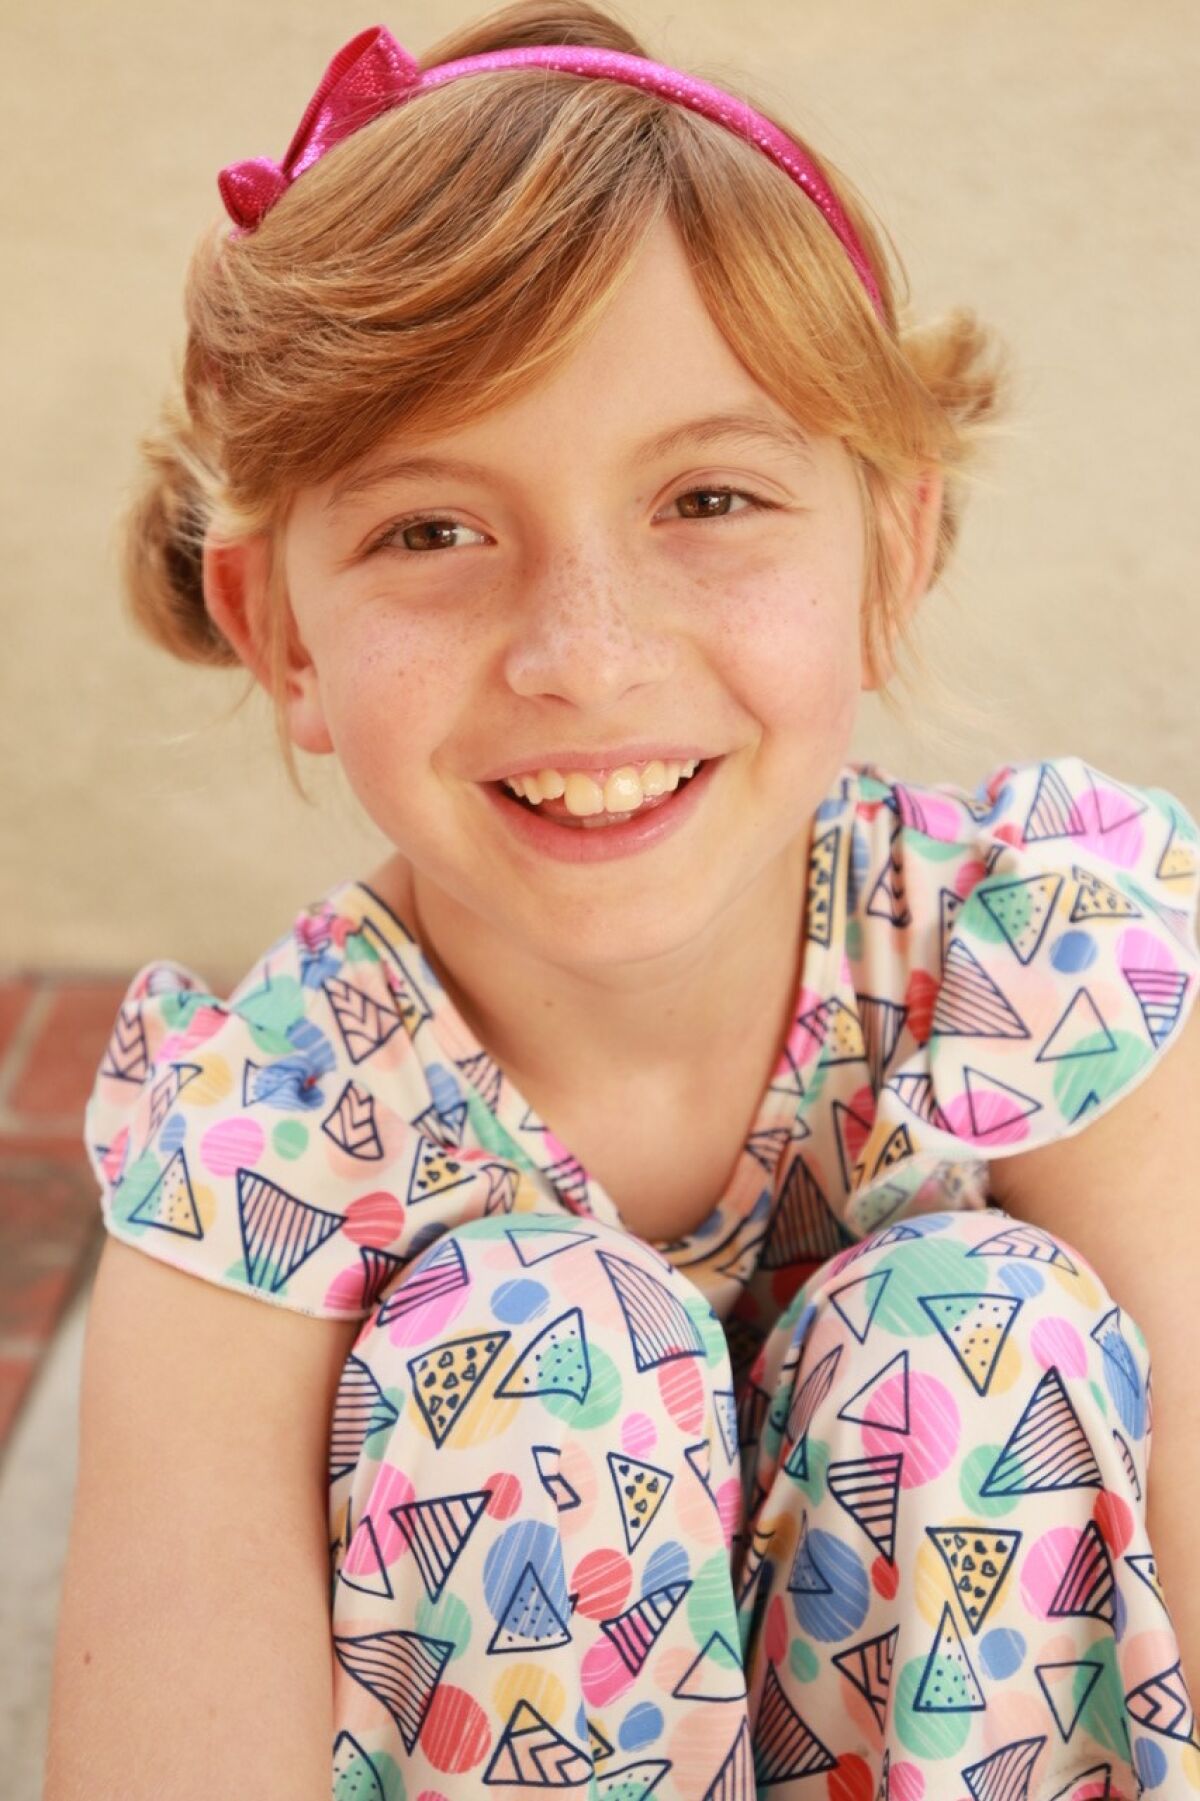 Olivia La Loggia of Huntington Beach, 10, was diagnosed with leukemia in 2017.